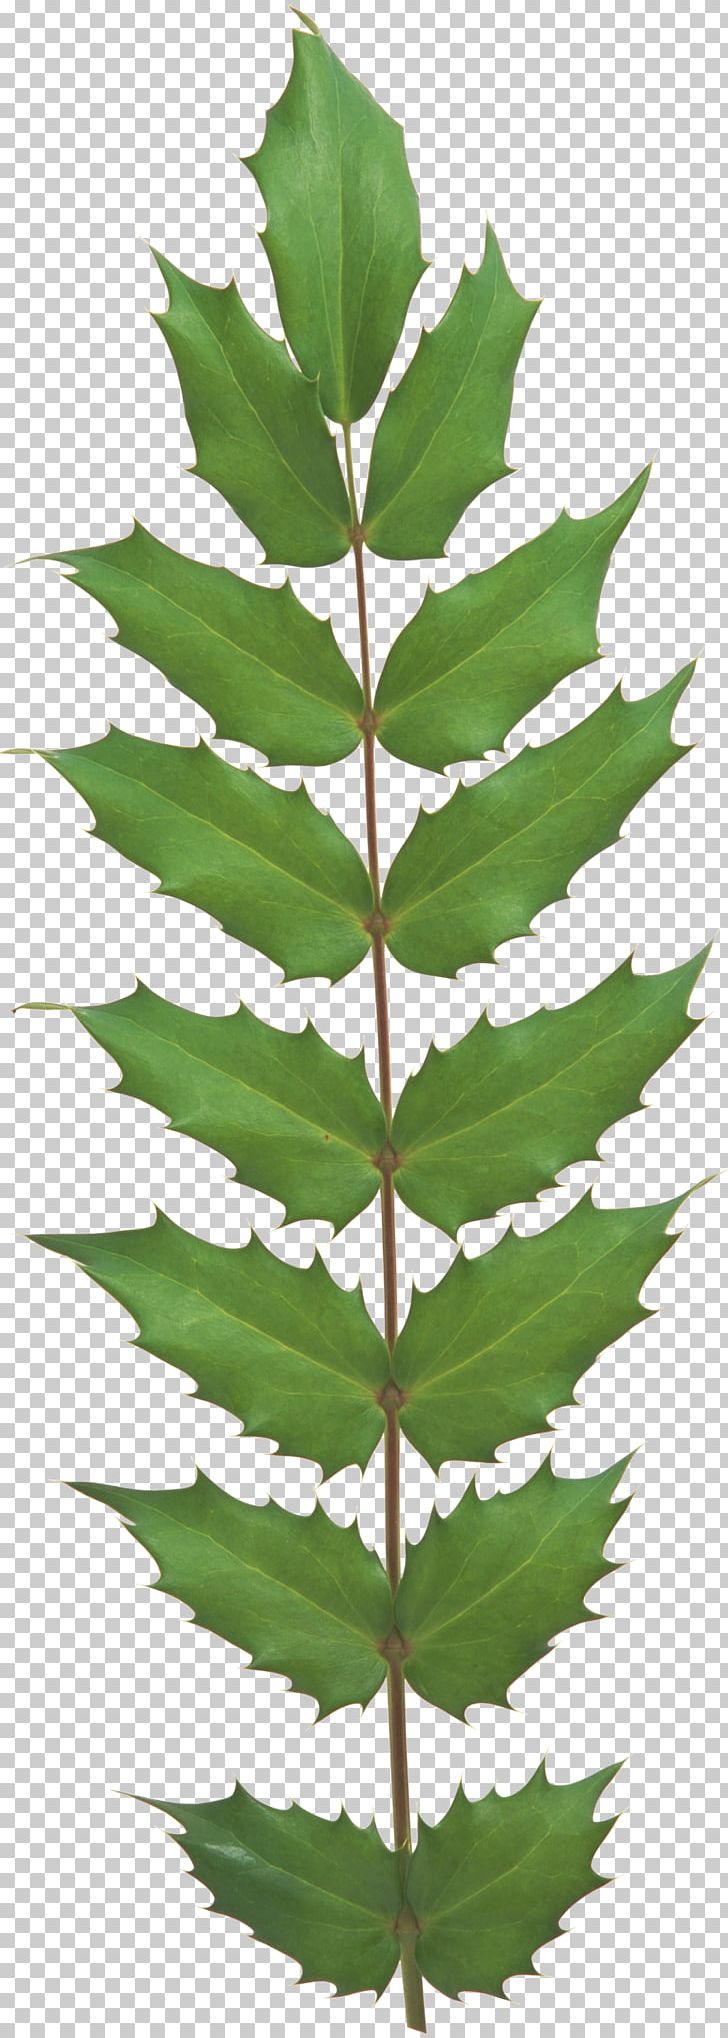 Leaf Evergreen Plant Stem Tree Vascular Plant PNG, Clipart, Conifer, Evergreen, Evergreen Plant, Fir, Leaf Free PNG Download